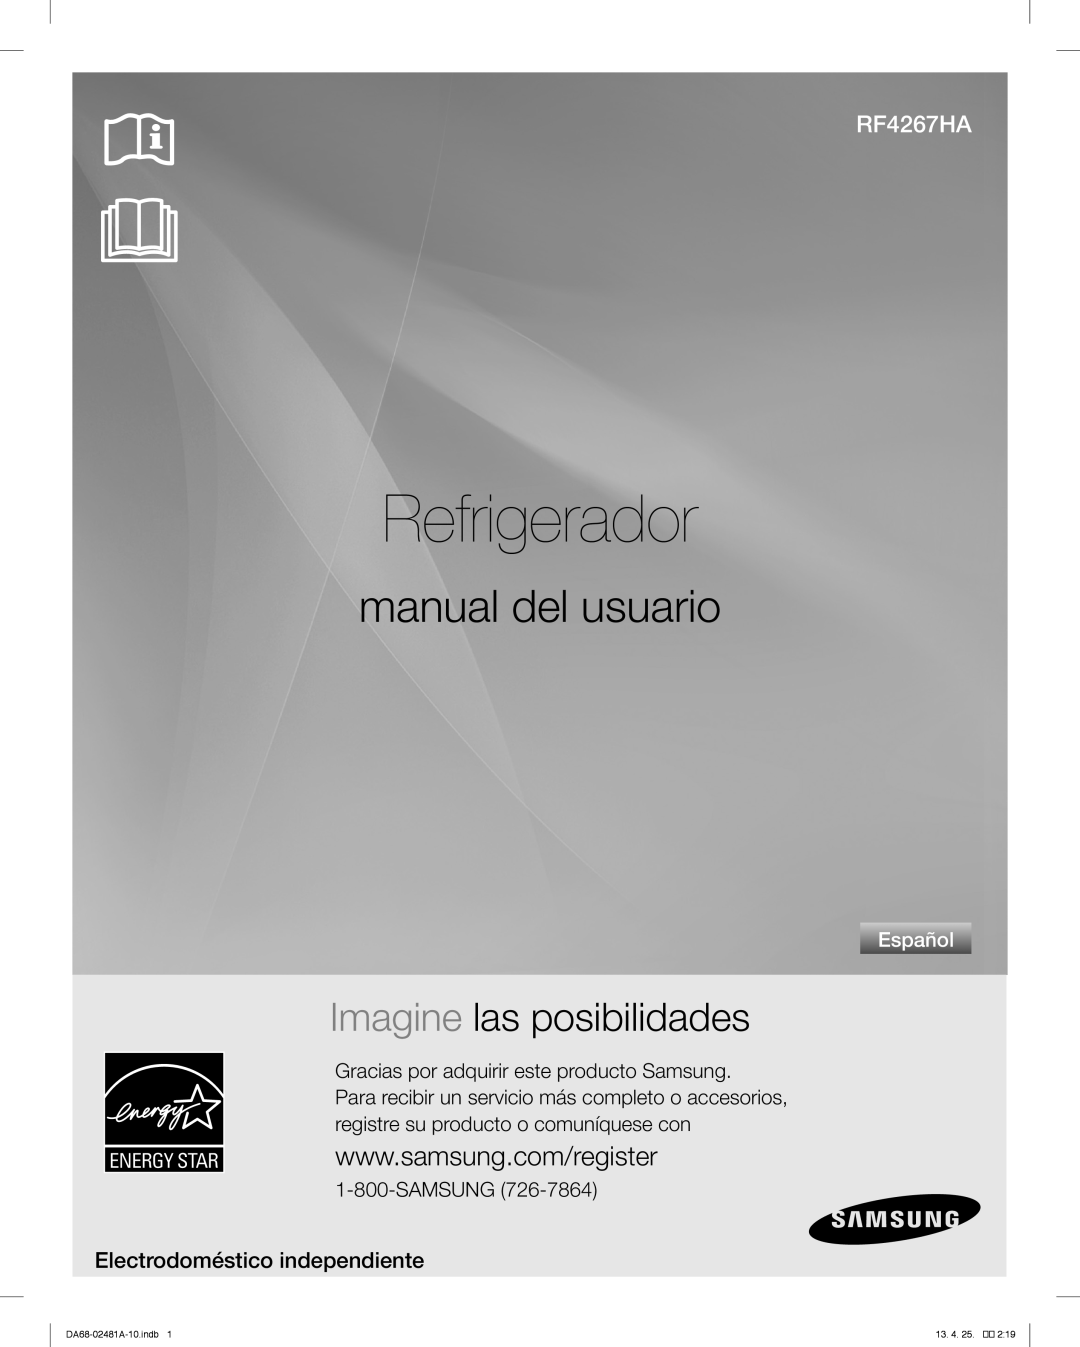 Samsung RF4267HAWP Refrigerador, manual del usuario, Imagine las posibilidades, Electrodoméstico independiente, Español 